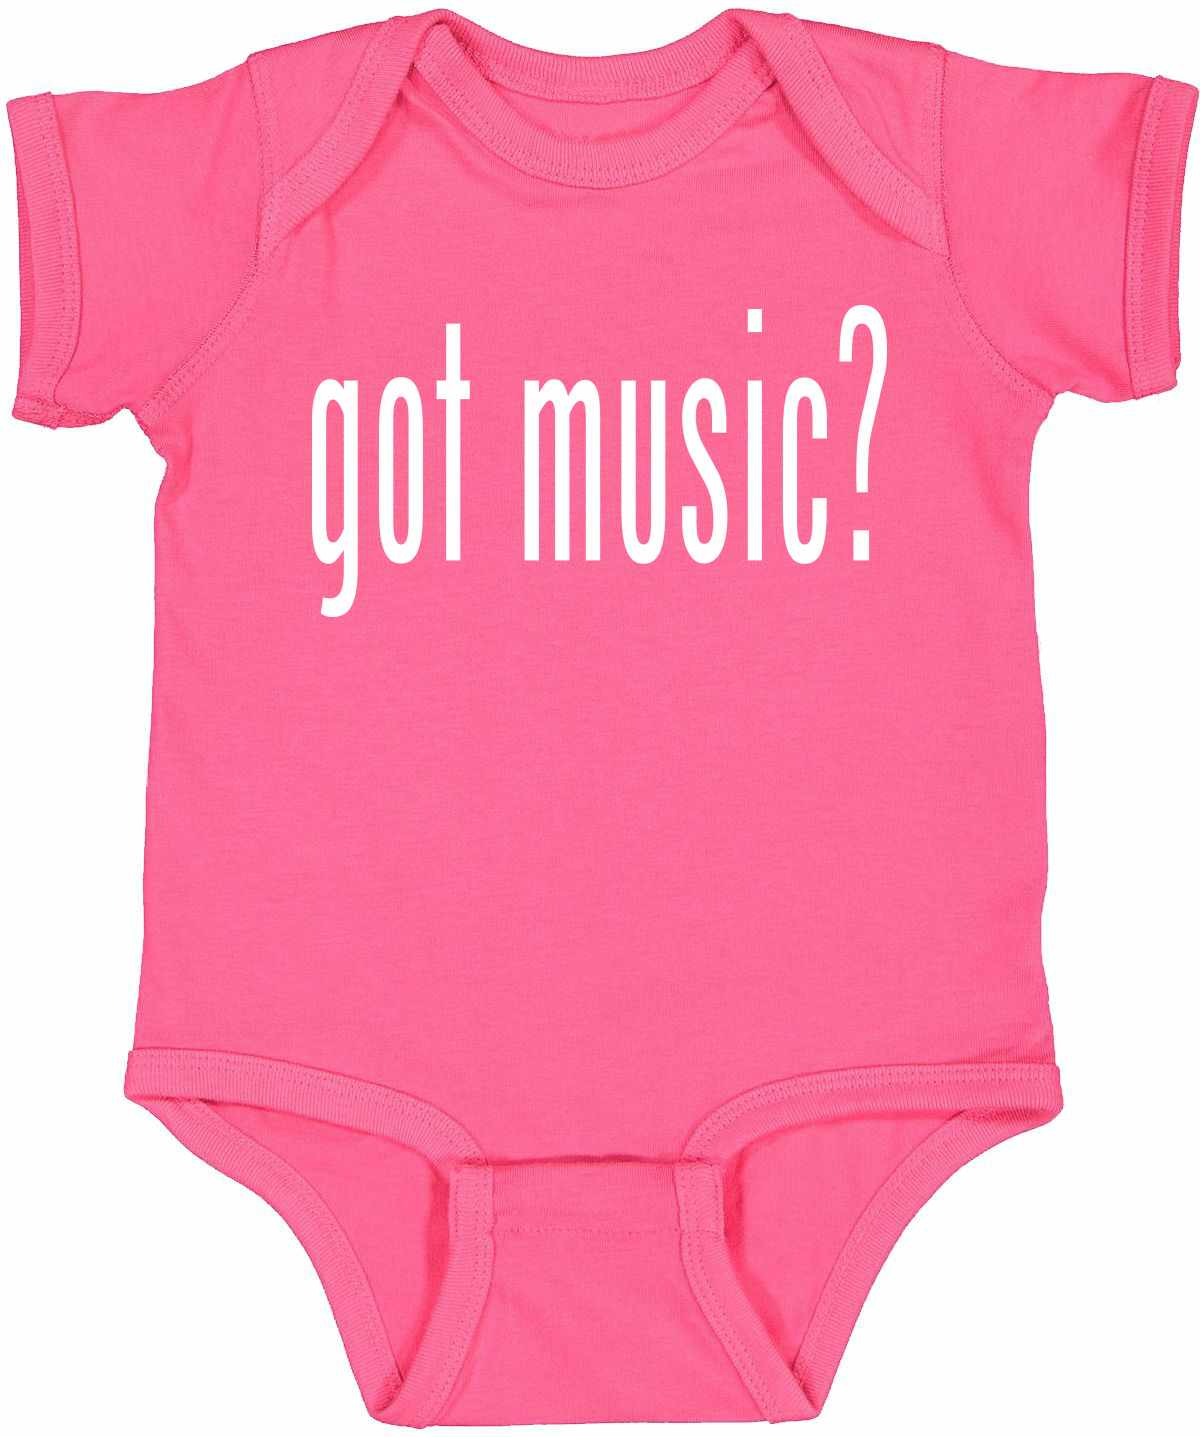 Got Music? on Infant BodySuit (#840-10)